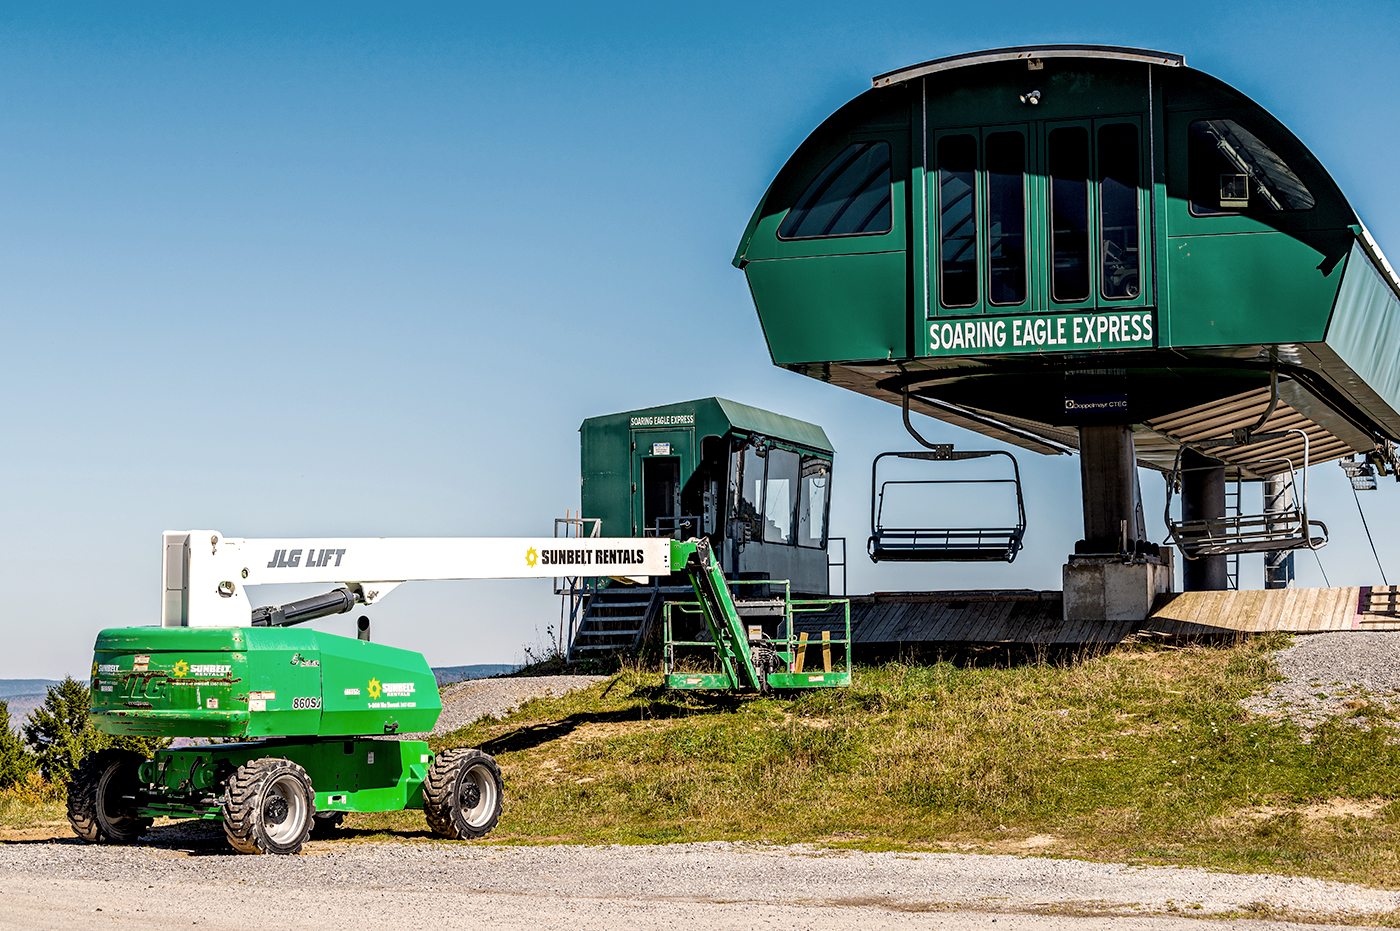 Soaring Eagle Express Ski lift with a Sunbelt Rental Forklift. 